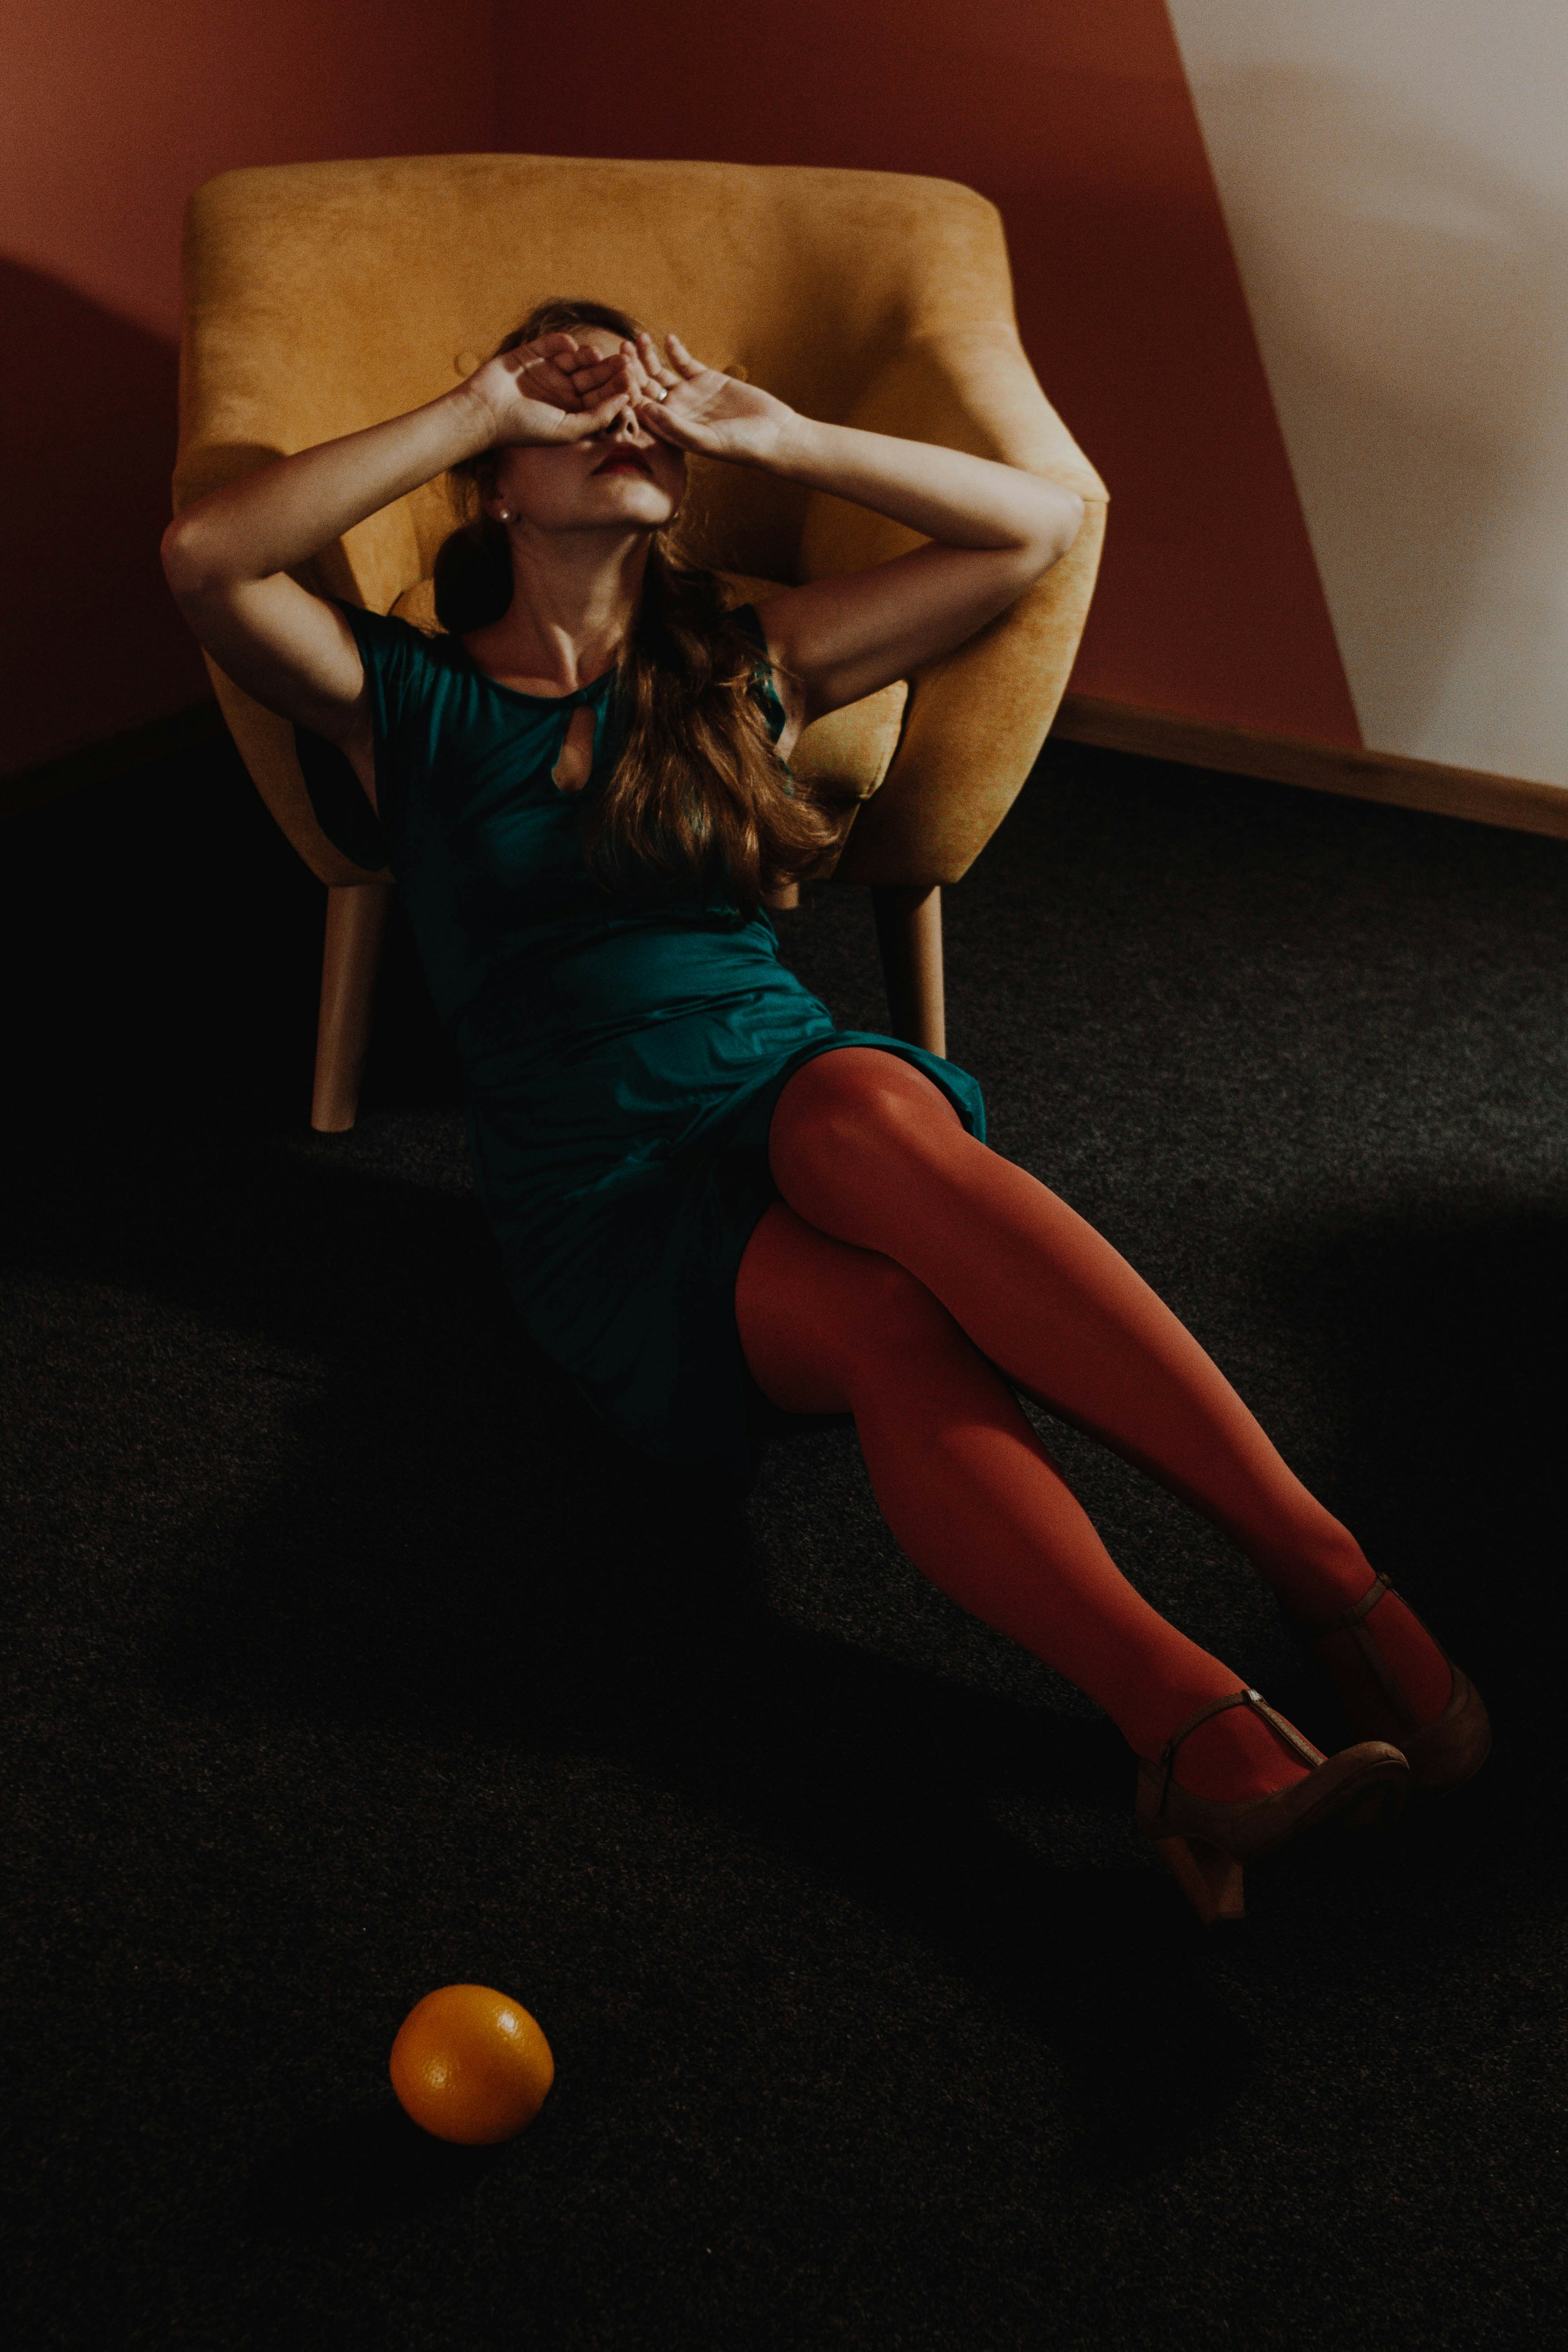 Una mujer angustiada apoyada en un sofá cubriéndose la cara con las manos | Fuente: Unsplash